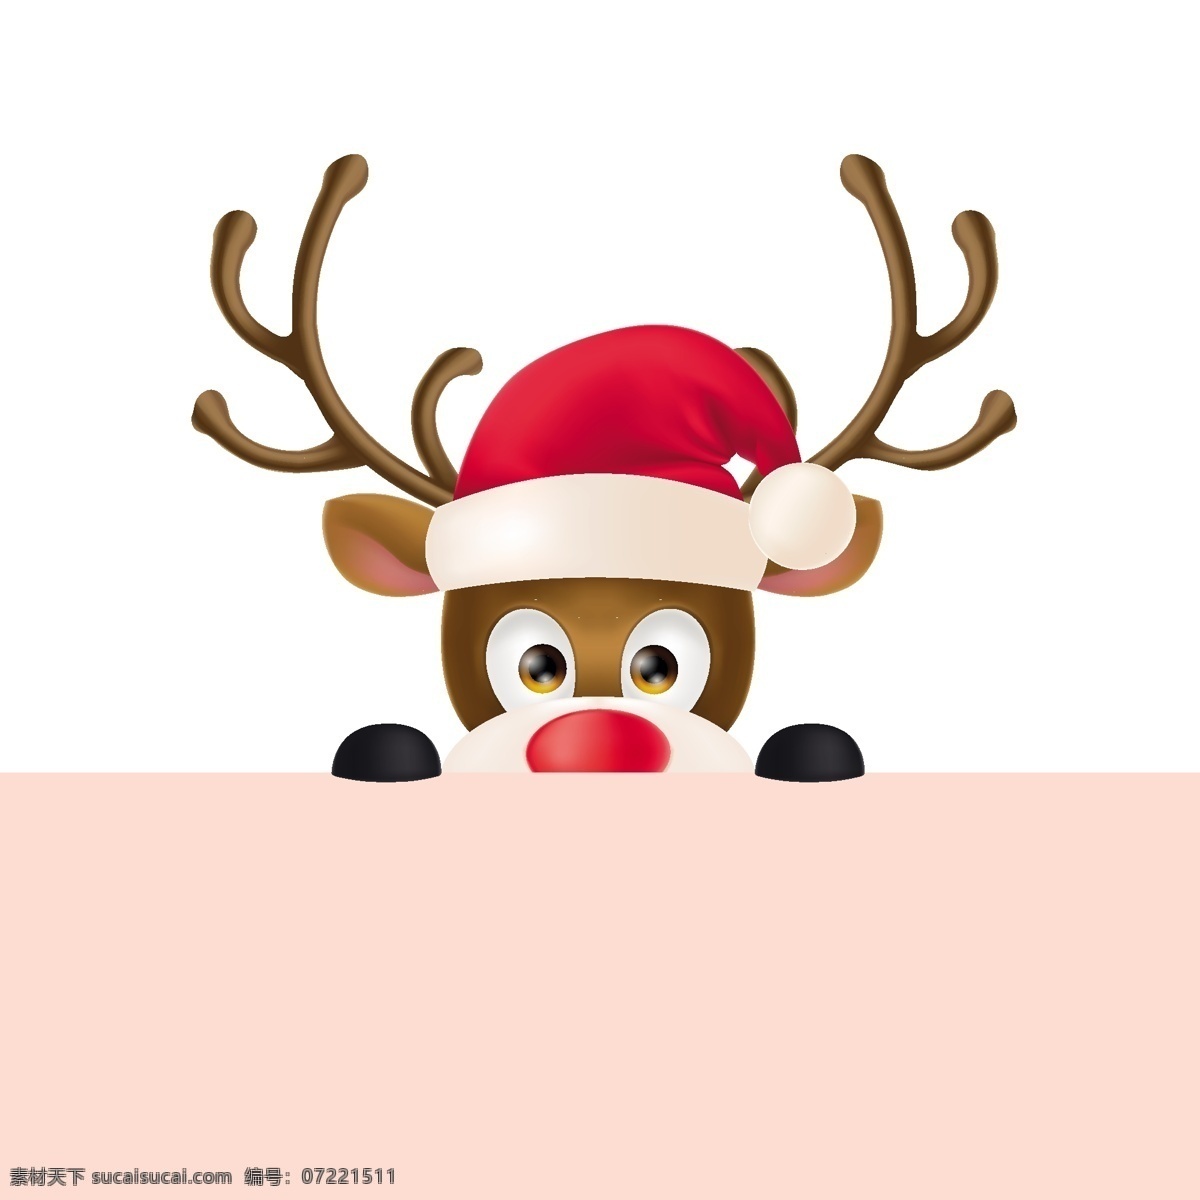 卡通 圣诞老人 驯鹿 动物 圣诞节 节日 过节 庆祝 狂欢 西方节日 假期 扁平 矢量